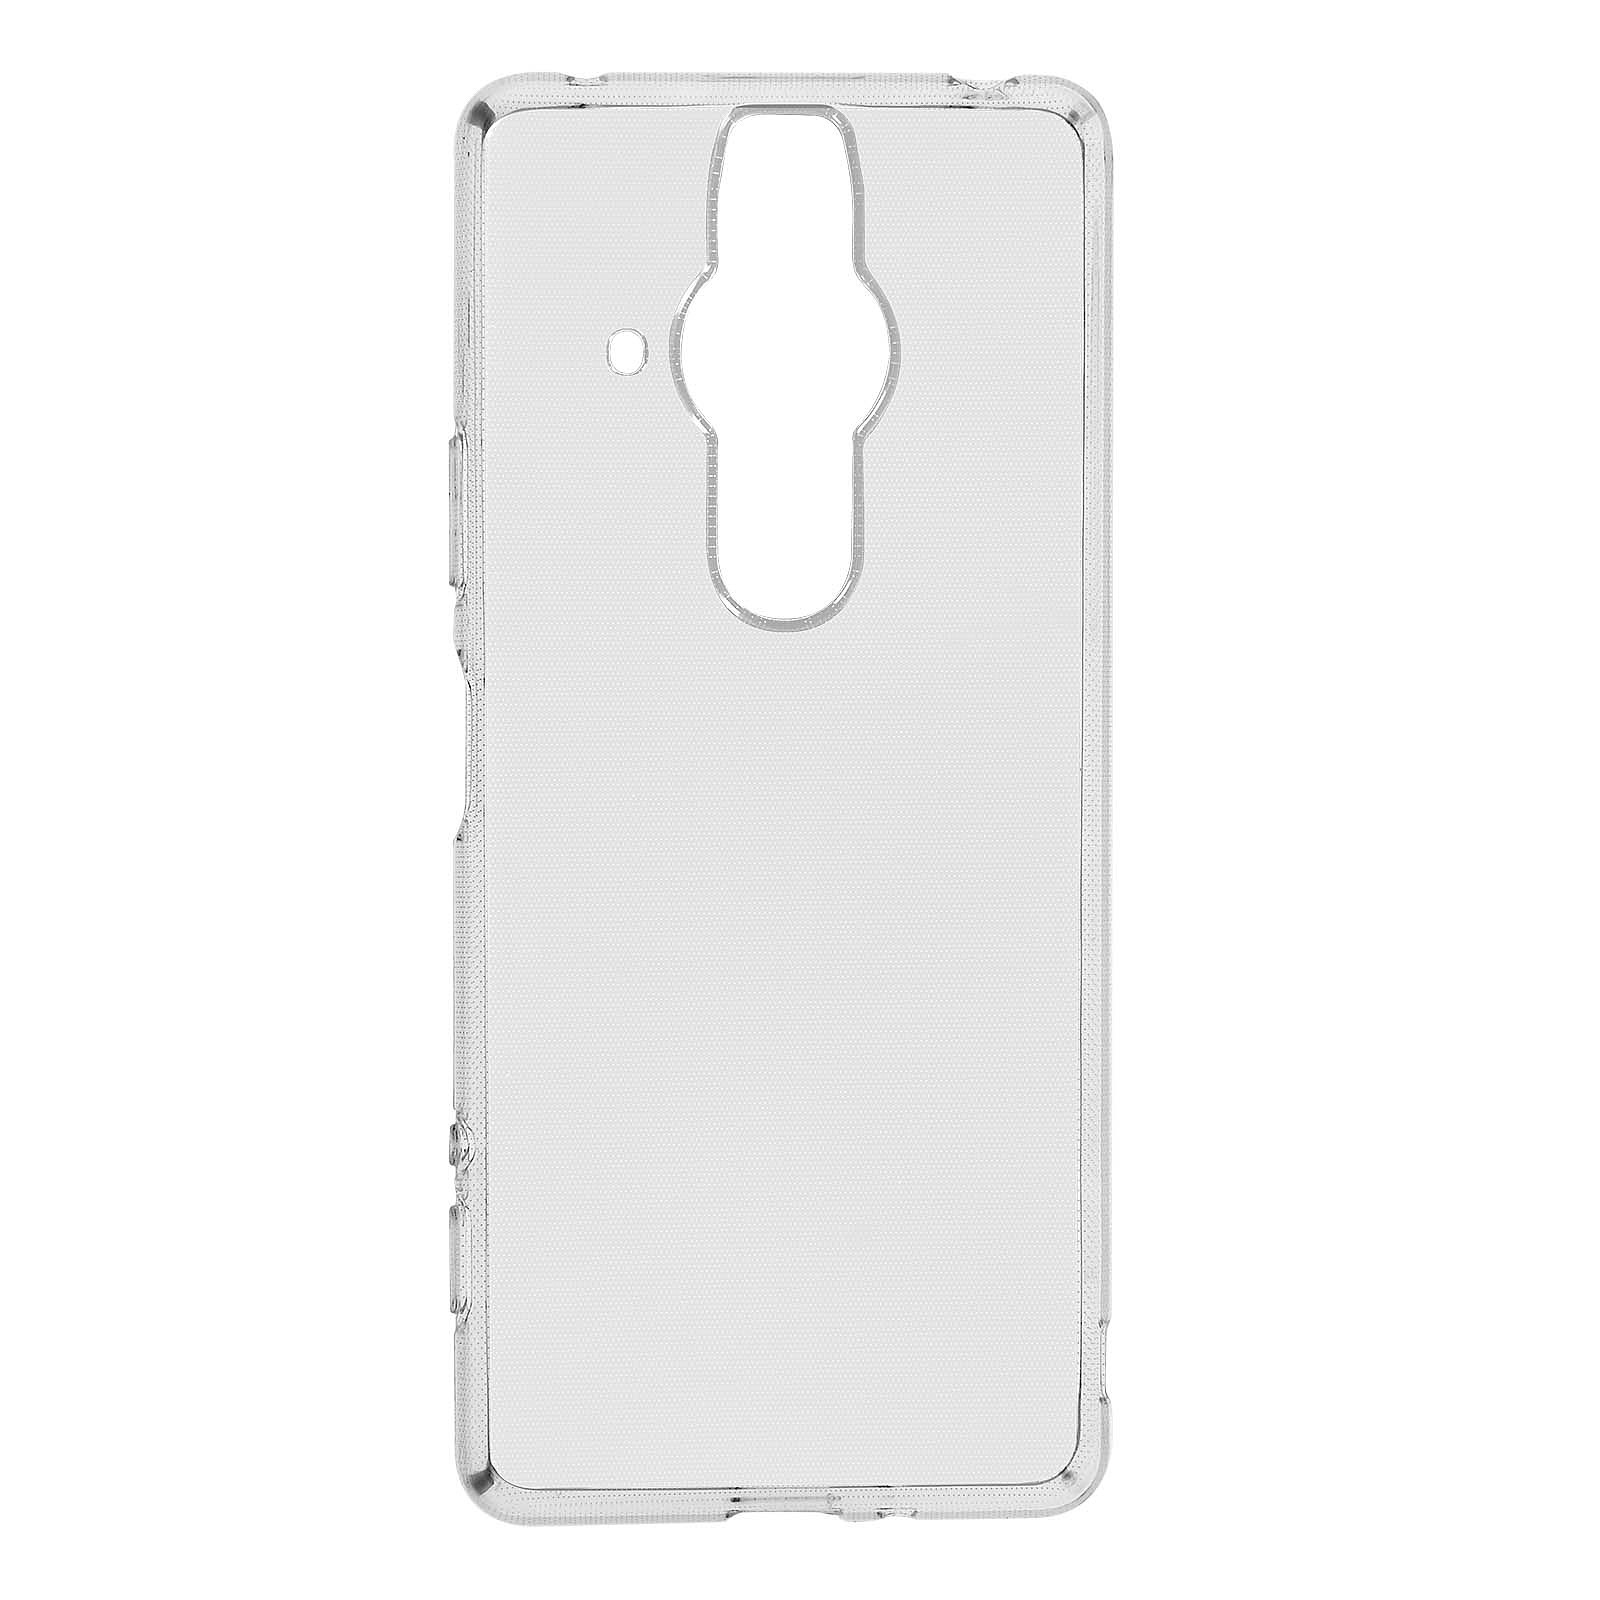 Avizar Coque pour Sony Xperia Pro-I Silicone gel Anti-jaunissement Transparente - Coque telephone Avizar